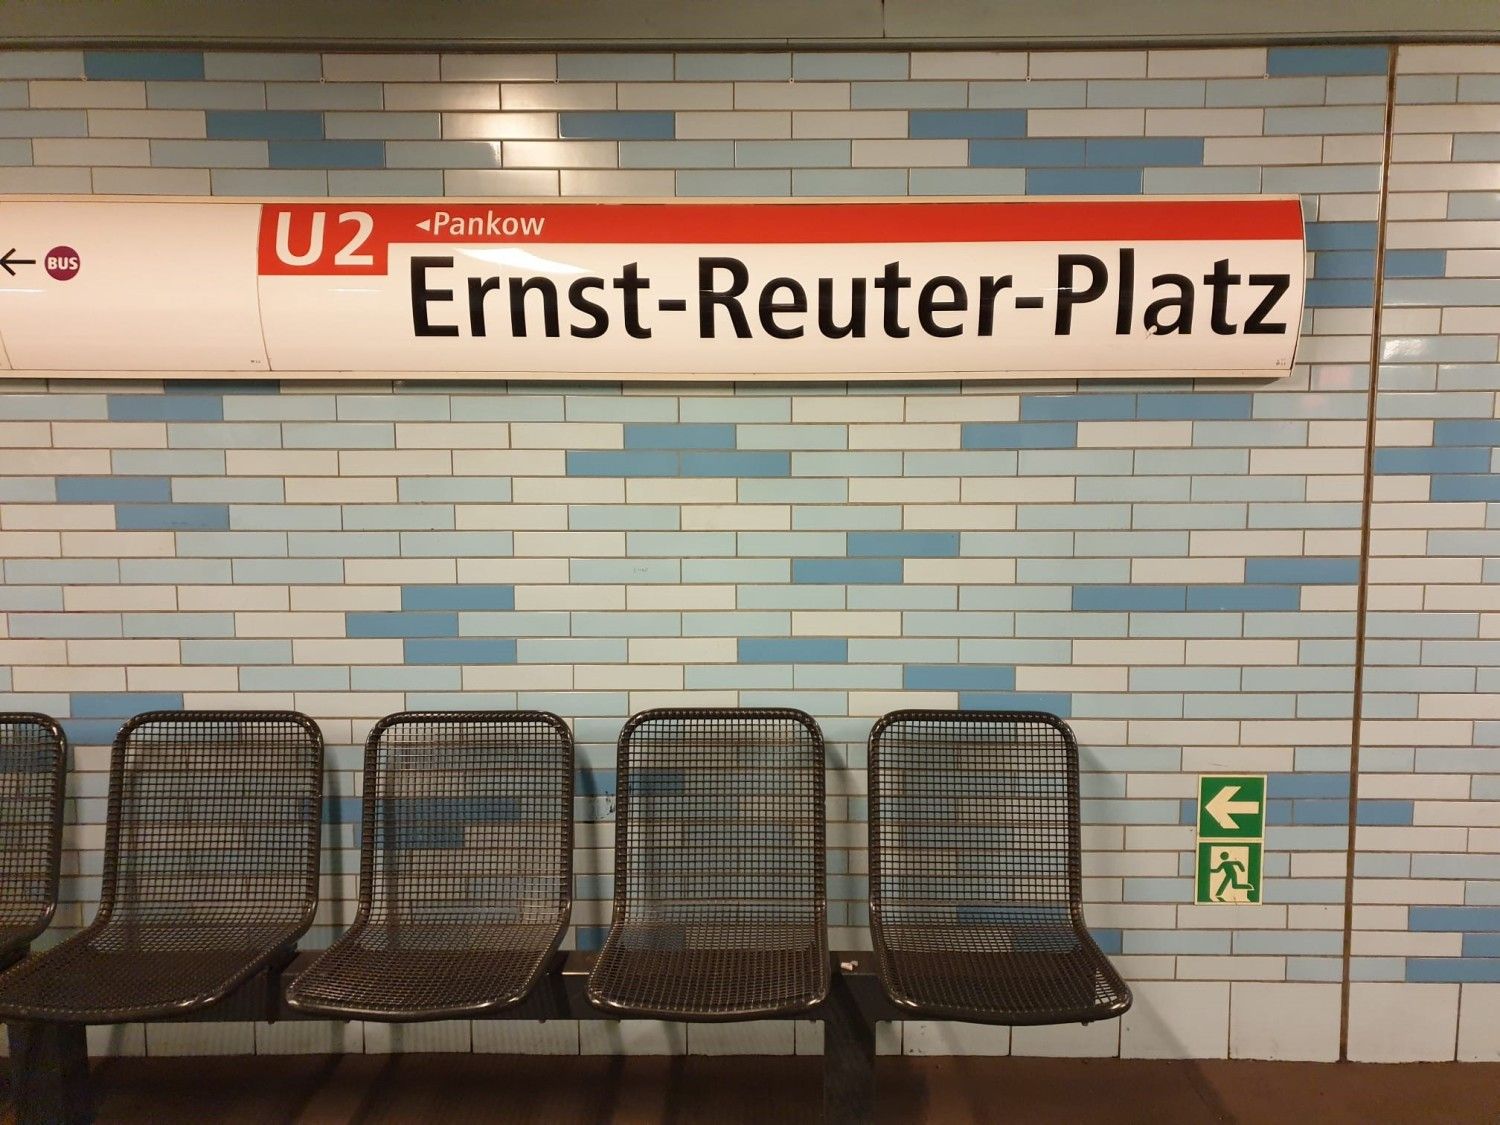 U2 Ernst-Reuter-Platz